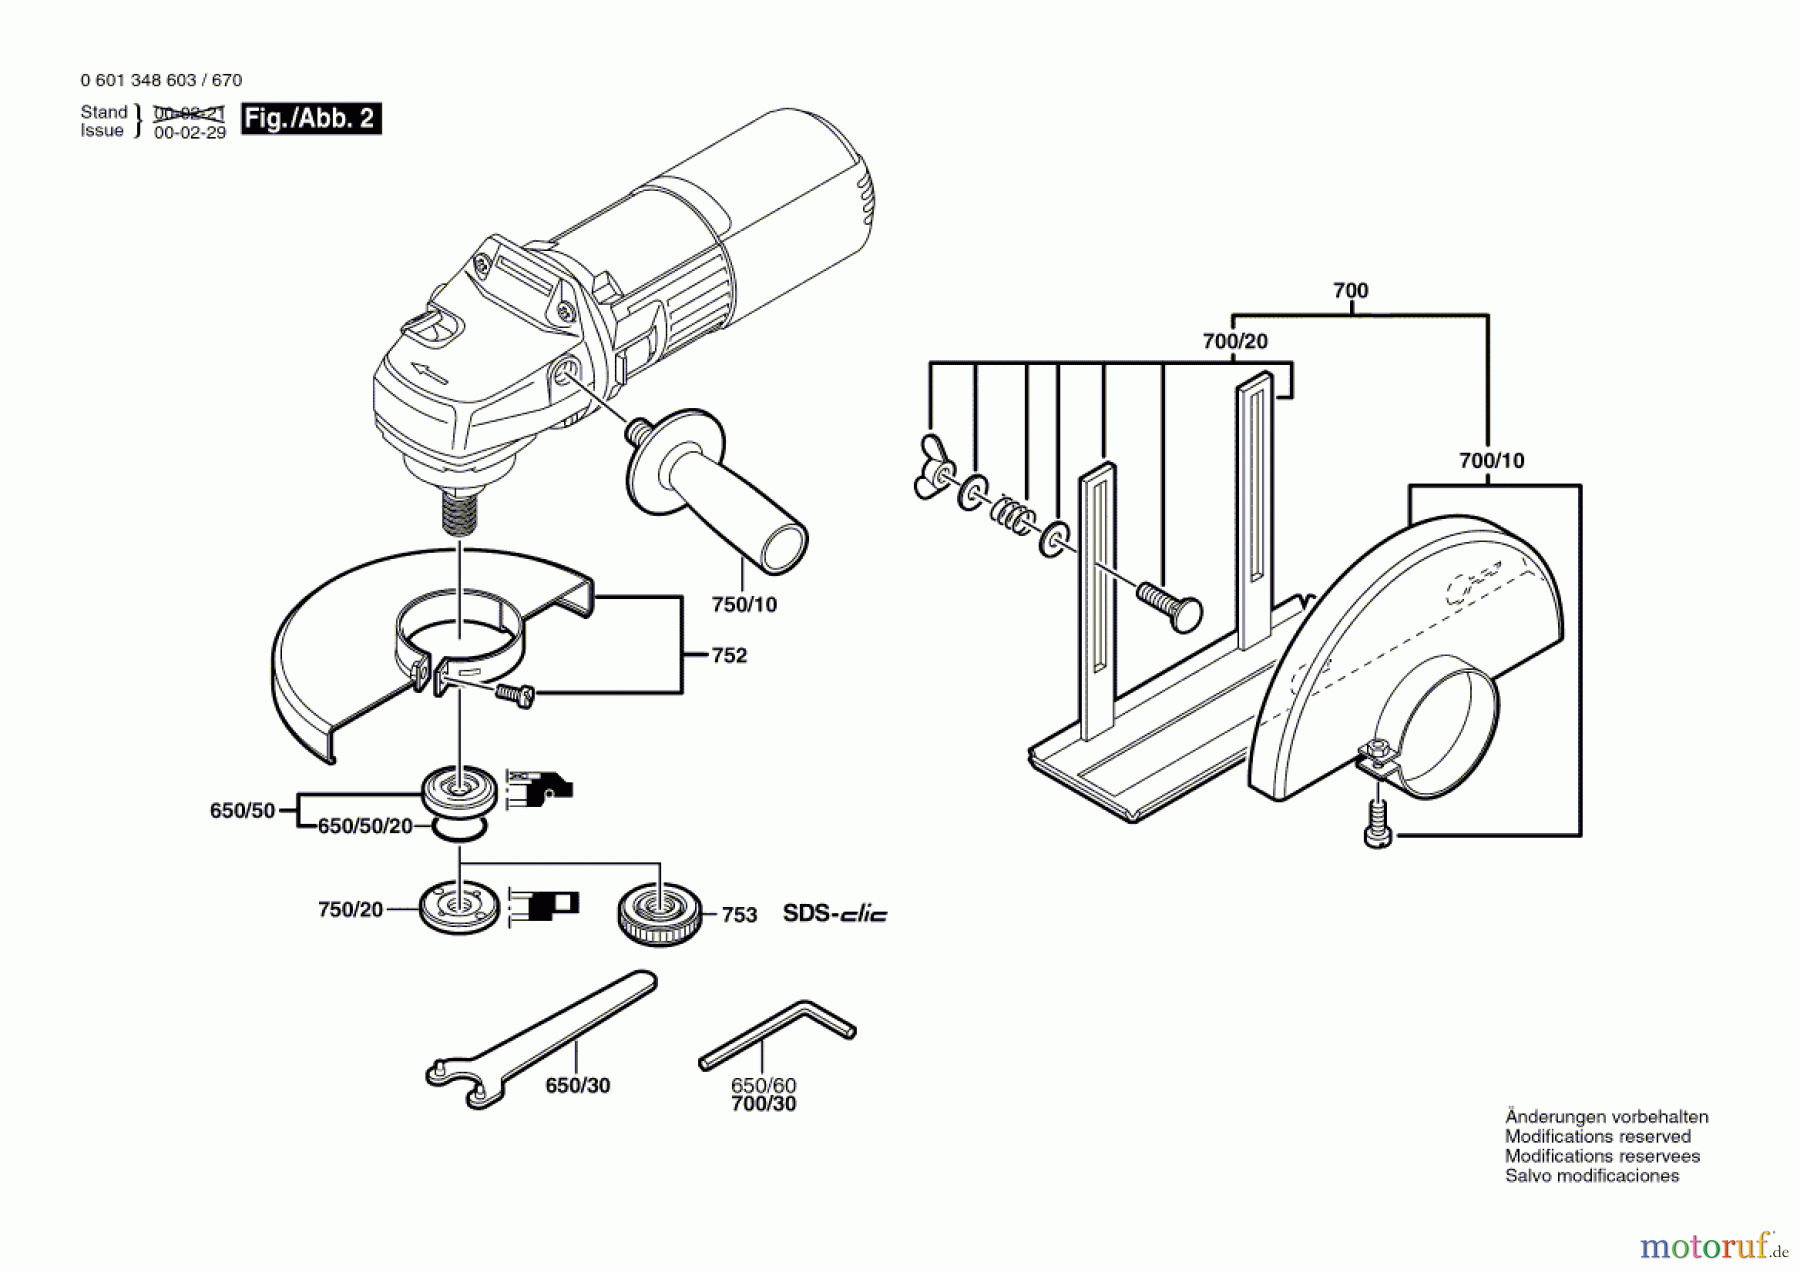  Bosch Werkzeug Winkelschleifer GWS 9-125 C Seite 2